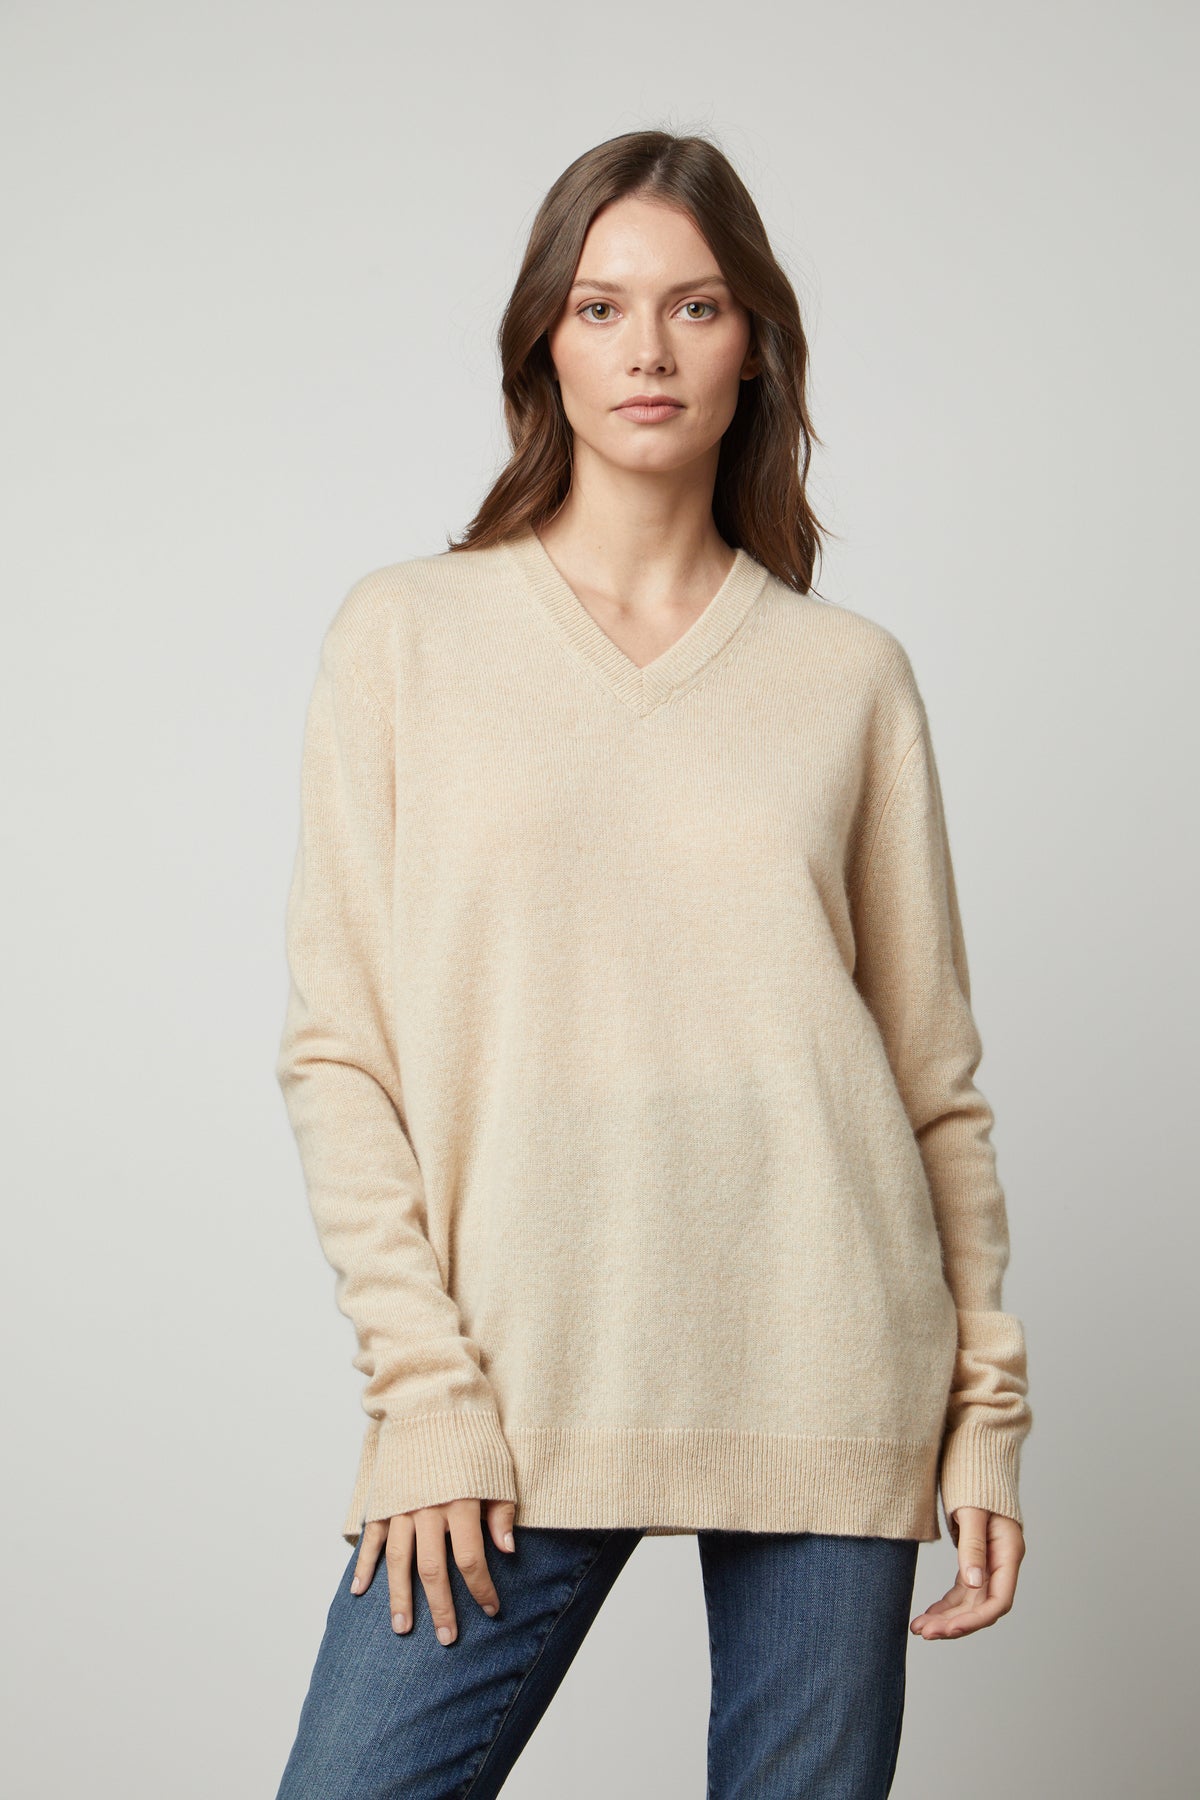   The Velvet by Graham & Spencer oversized cashmere v-neck sweater in beige. 